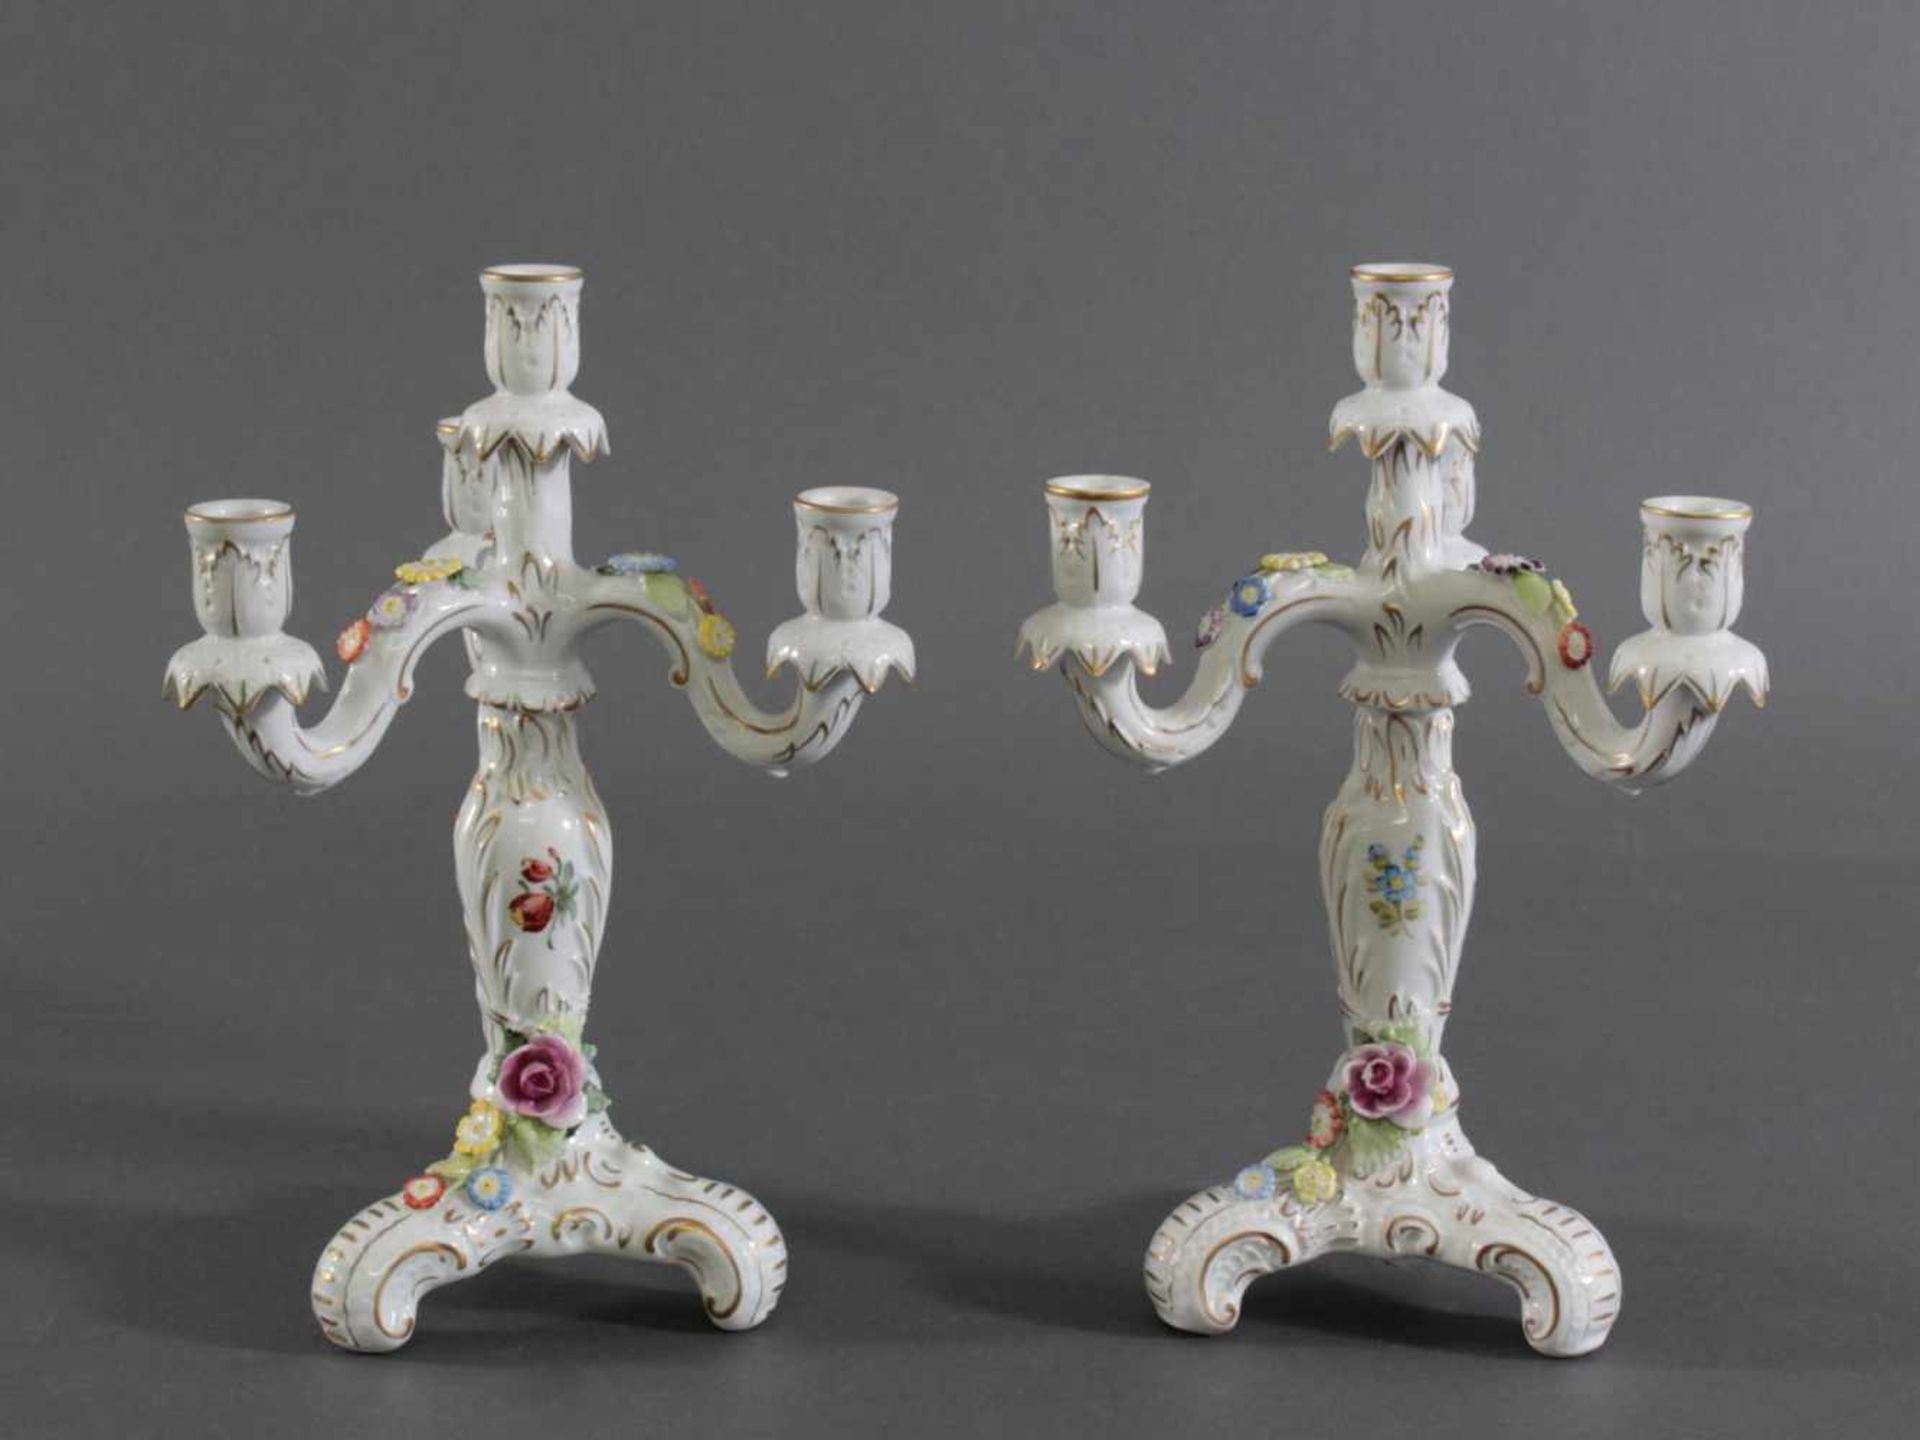 Paar Kerzenleuchter, Porzellanmanufaktur/PlauePorzellan, 3-flammiger Leuchter auf dreibeinigem